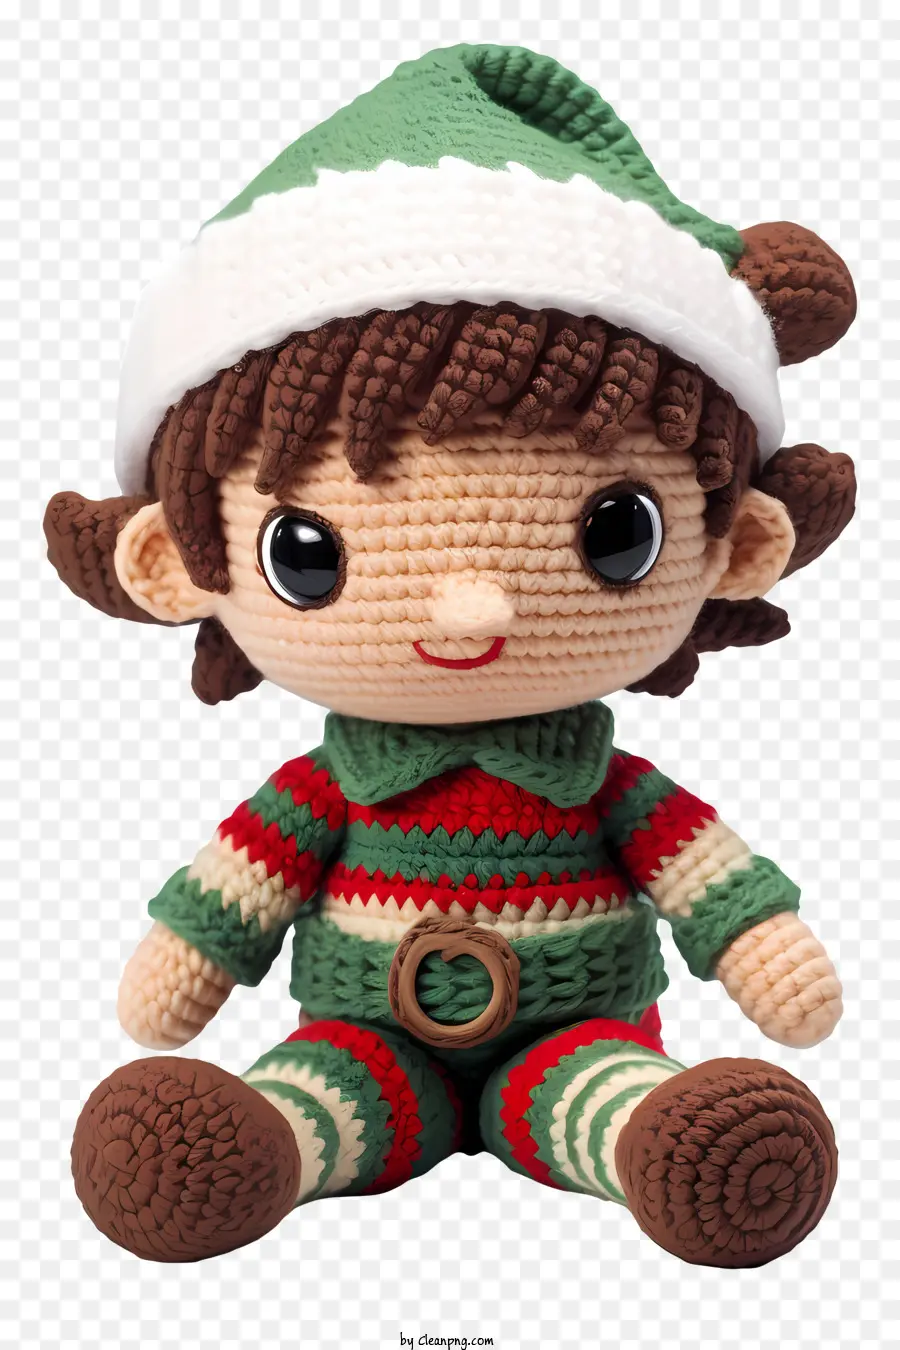 Babbo Natale giocattolo peluche cappello rosso e bianco Cappello verde e bianco Stivali verdi a strisce marrone - Babbo Natale peluche giocattolo su sfondo nero